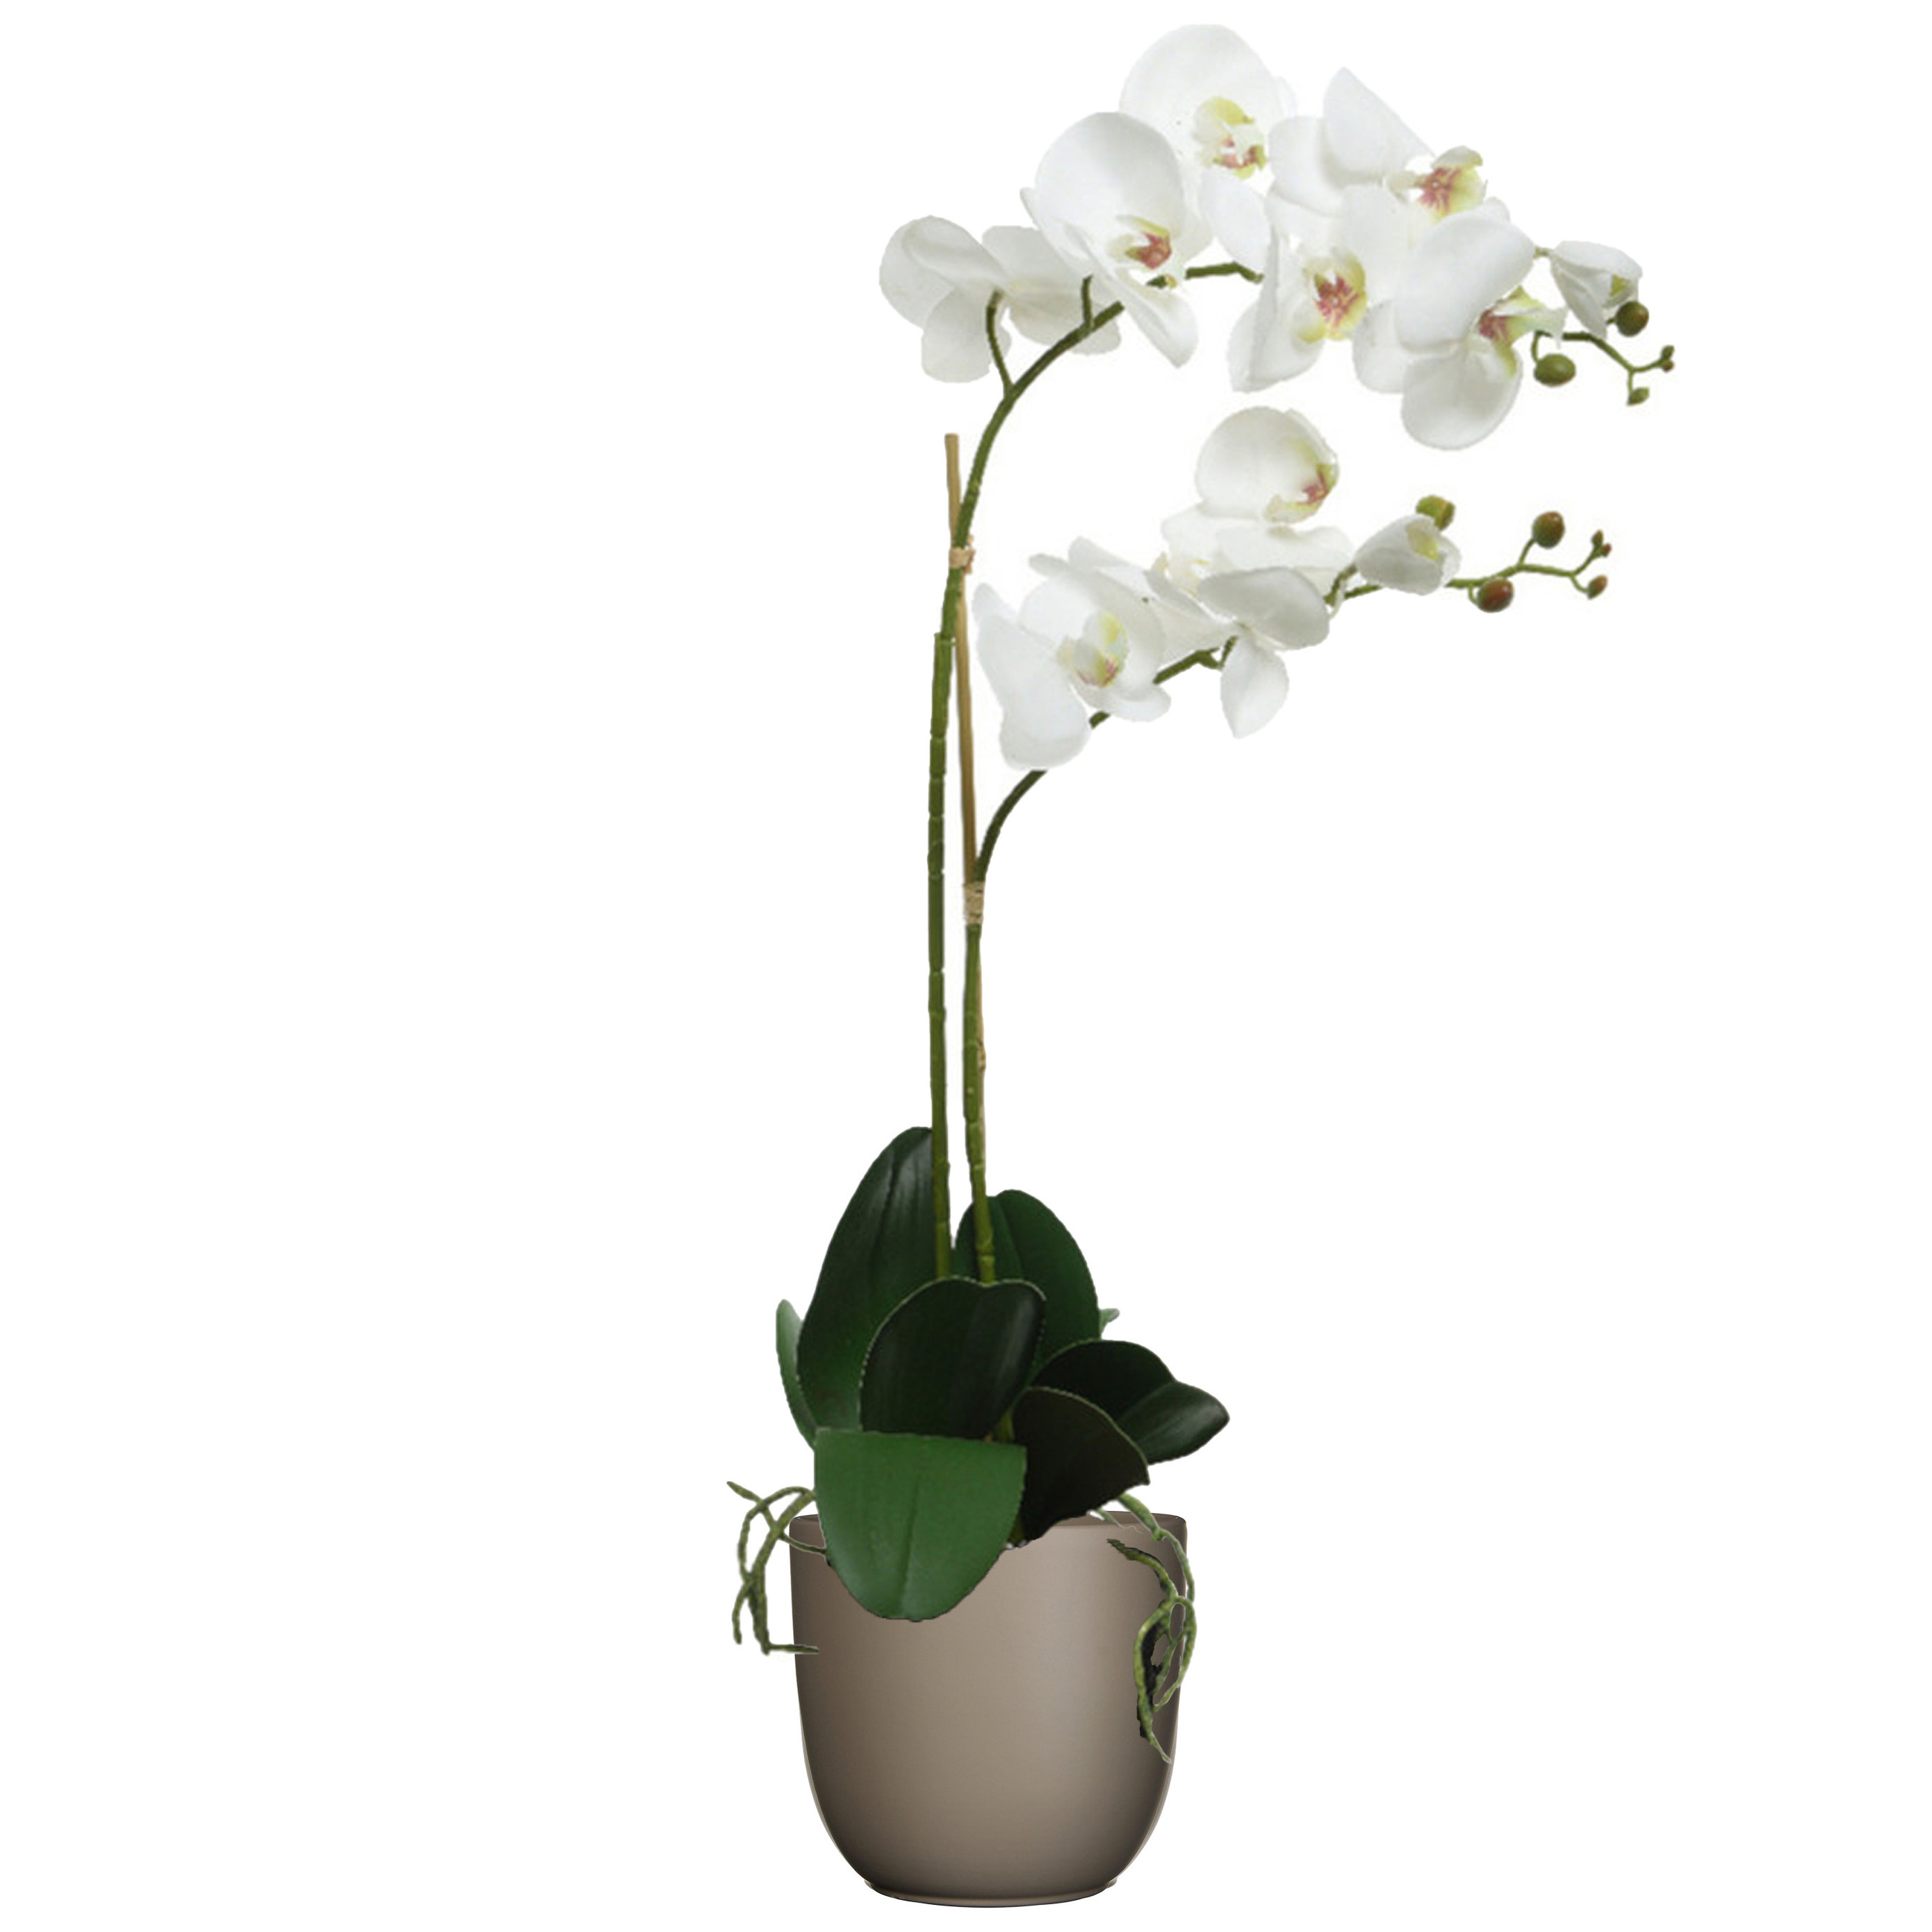 Orchidee kunstplant wit - 62 cm - inclusief bloempot taupe mat - Kunstbloemen in pot